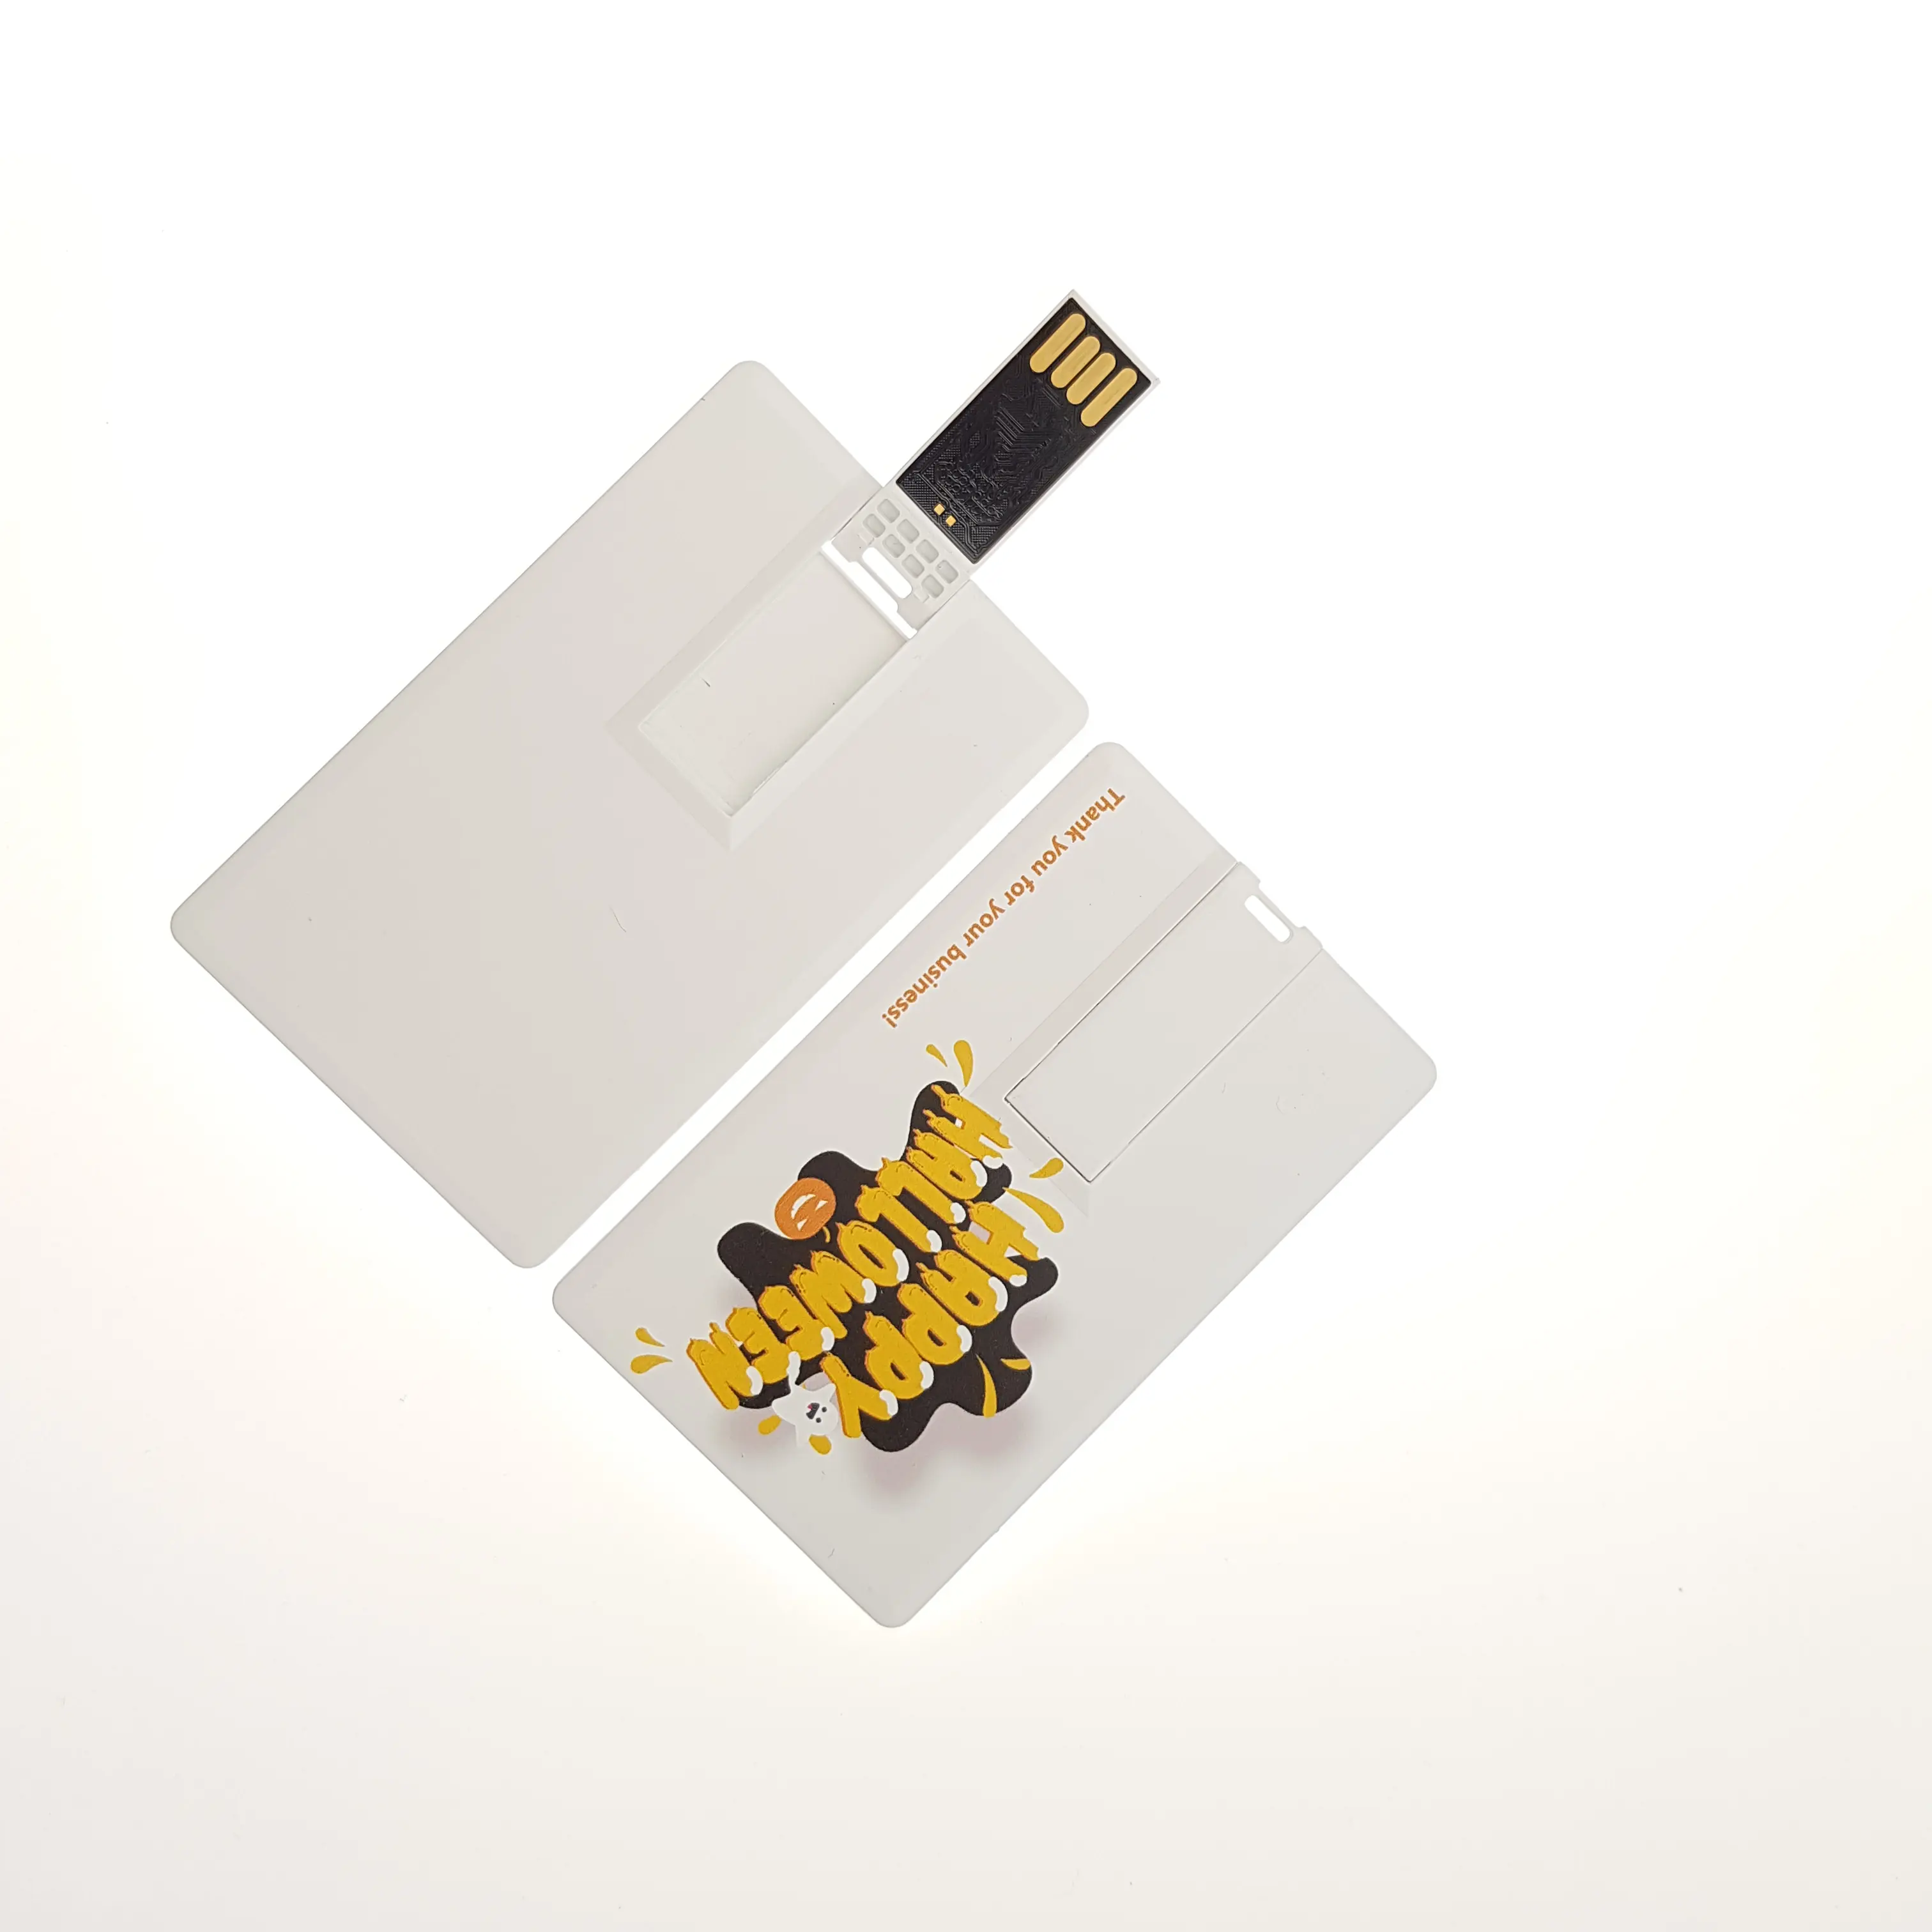 비즈니스 사용자 정의 펜 드라이브 신용 카드 usb 창조적 인 디자인 사용자 정의 신용 카드 usb 플래시 드라이브 2.0